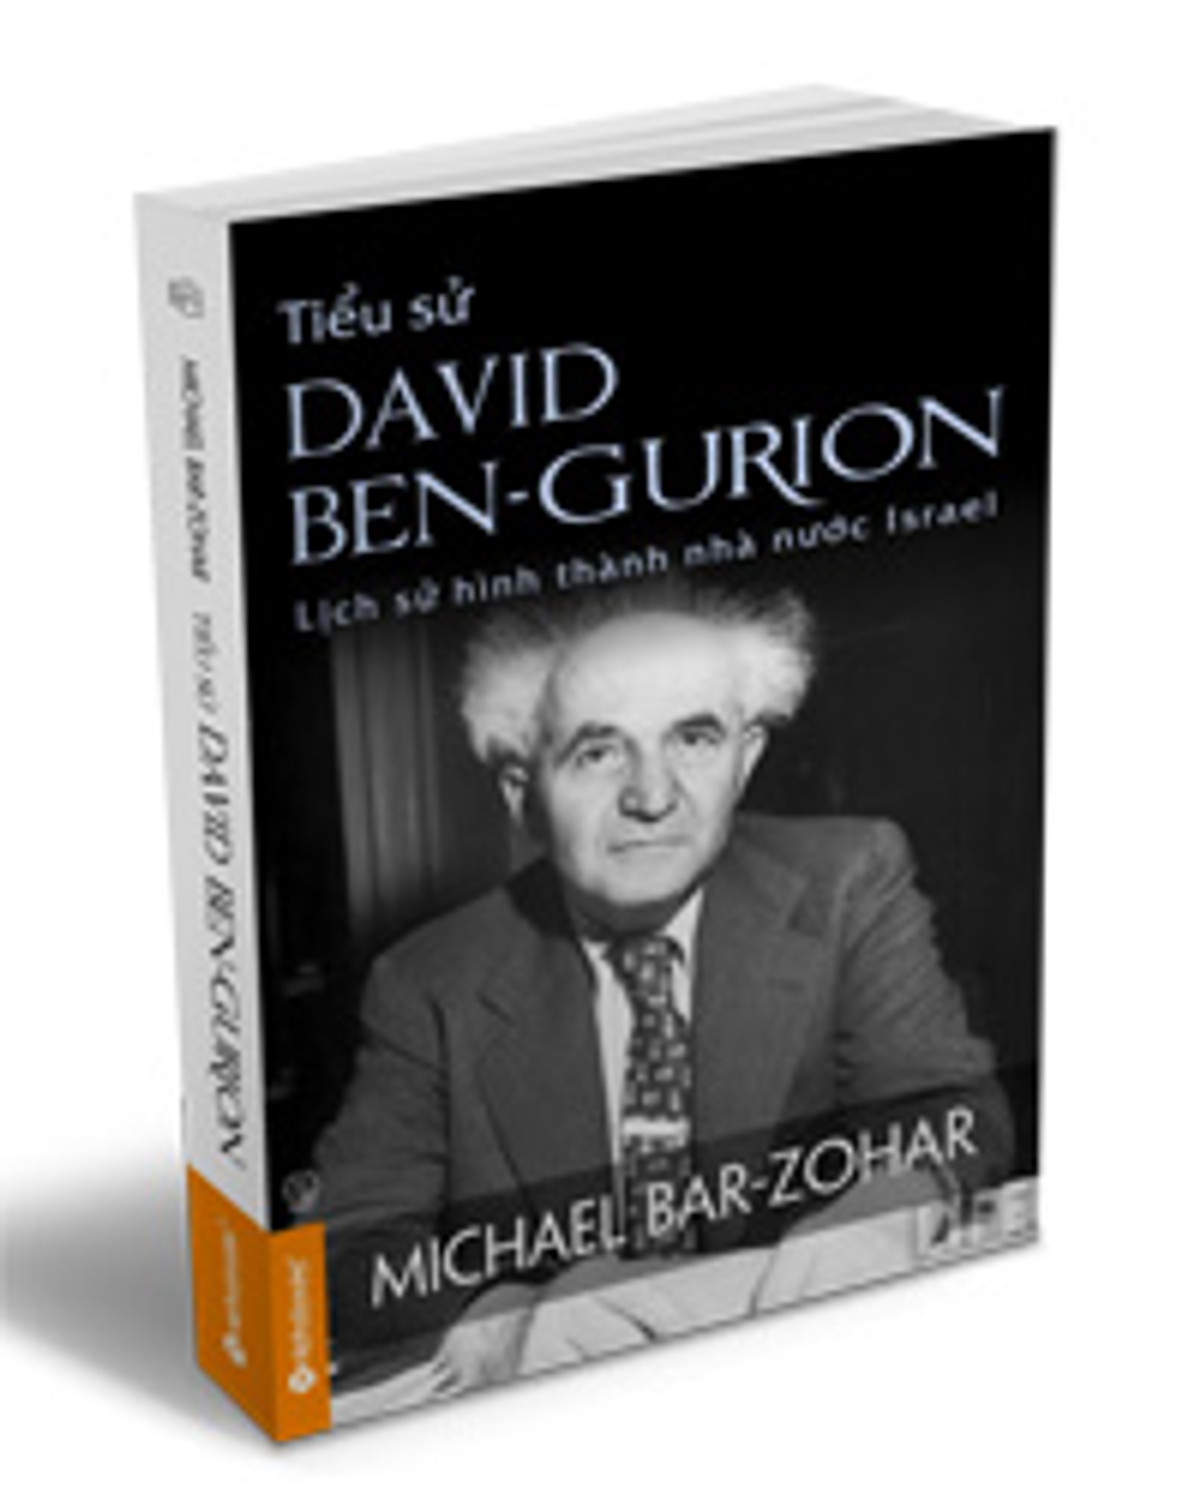 Tiểu Sử David Ben - Gurion